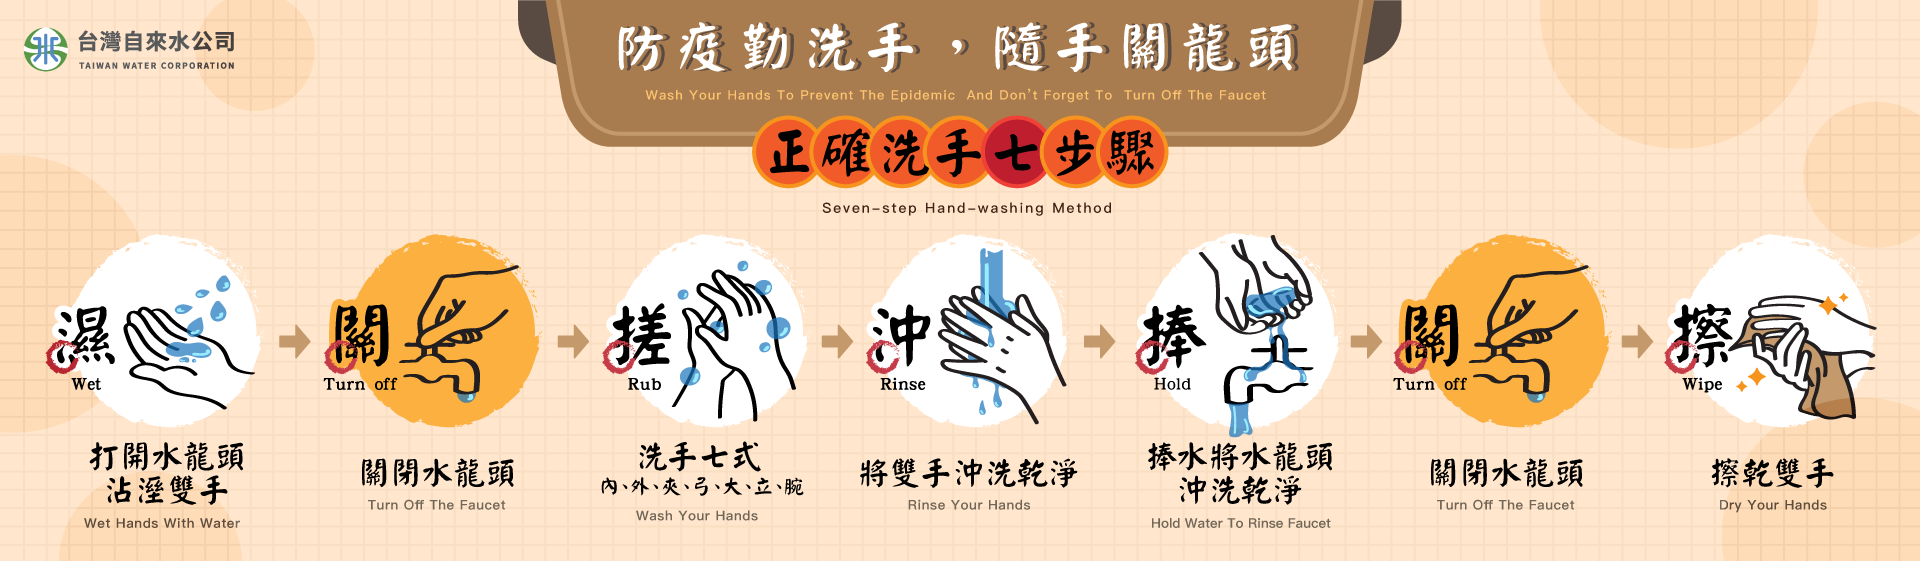 台灣自來水公司防疫勤洗手隨手關龍頭宣傳海報